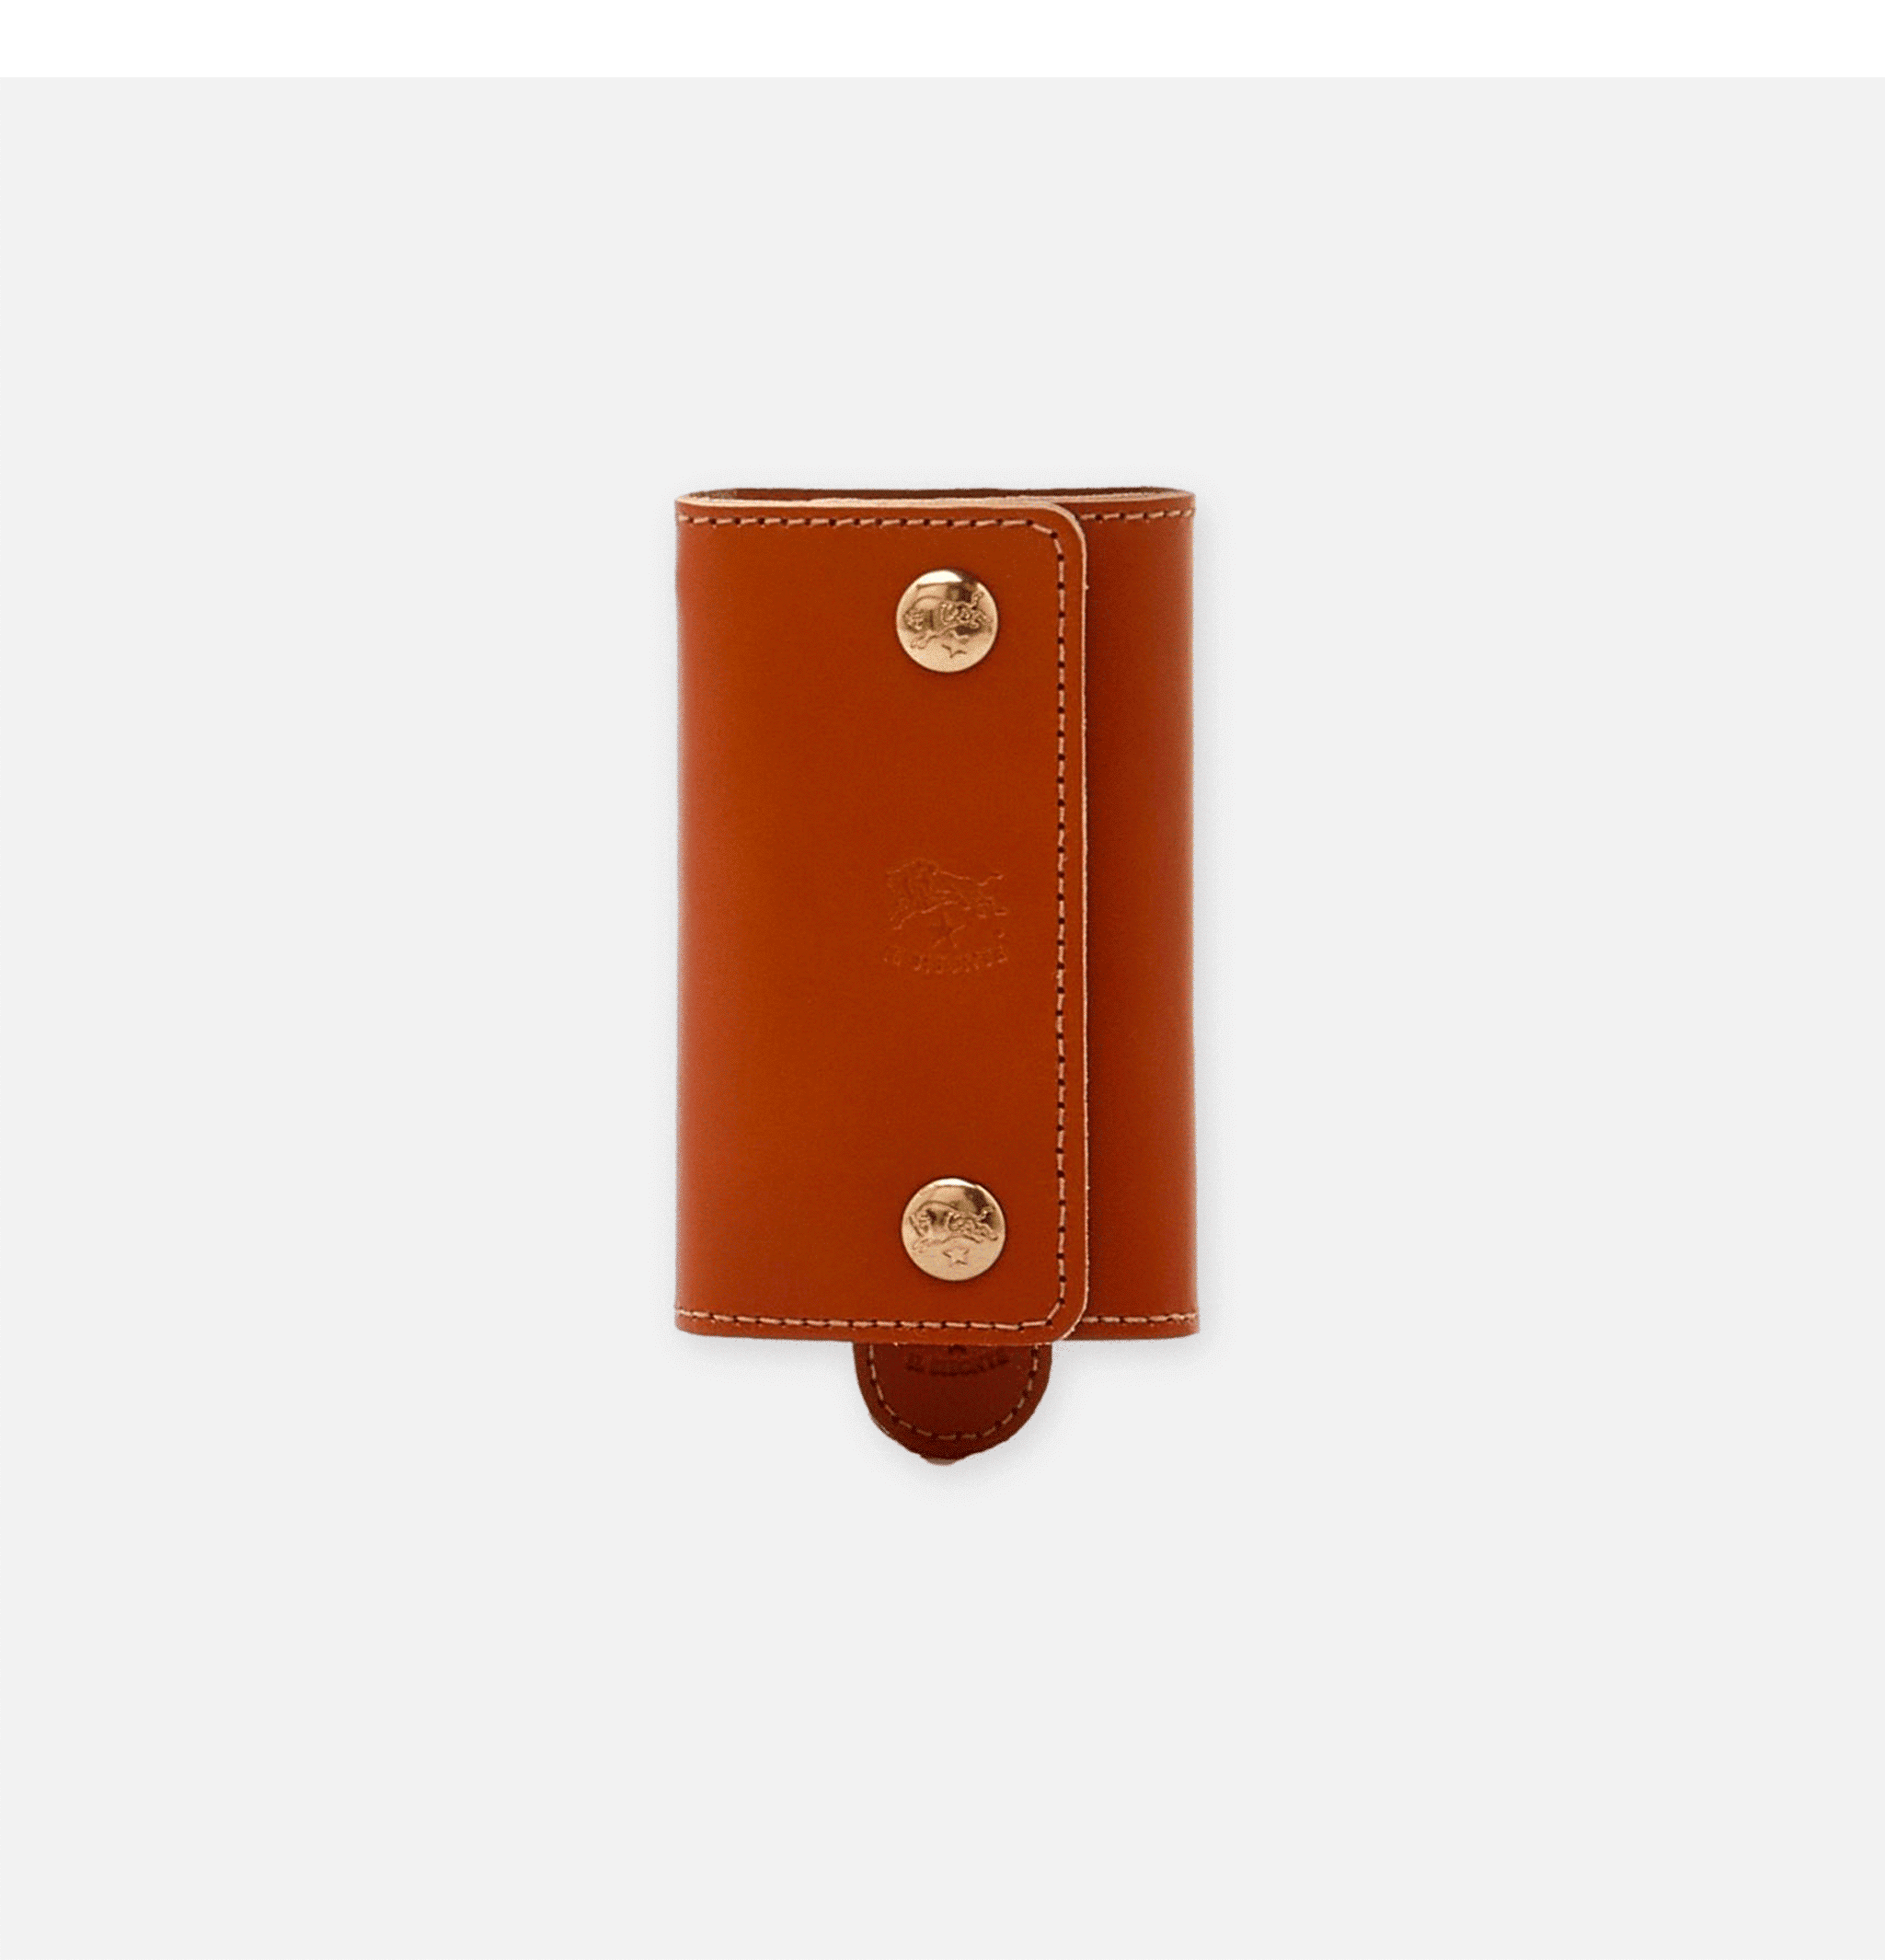 IL Bisonte Key Holder Caramel Leather